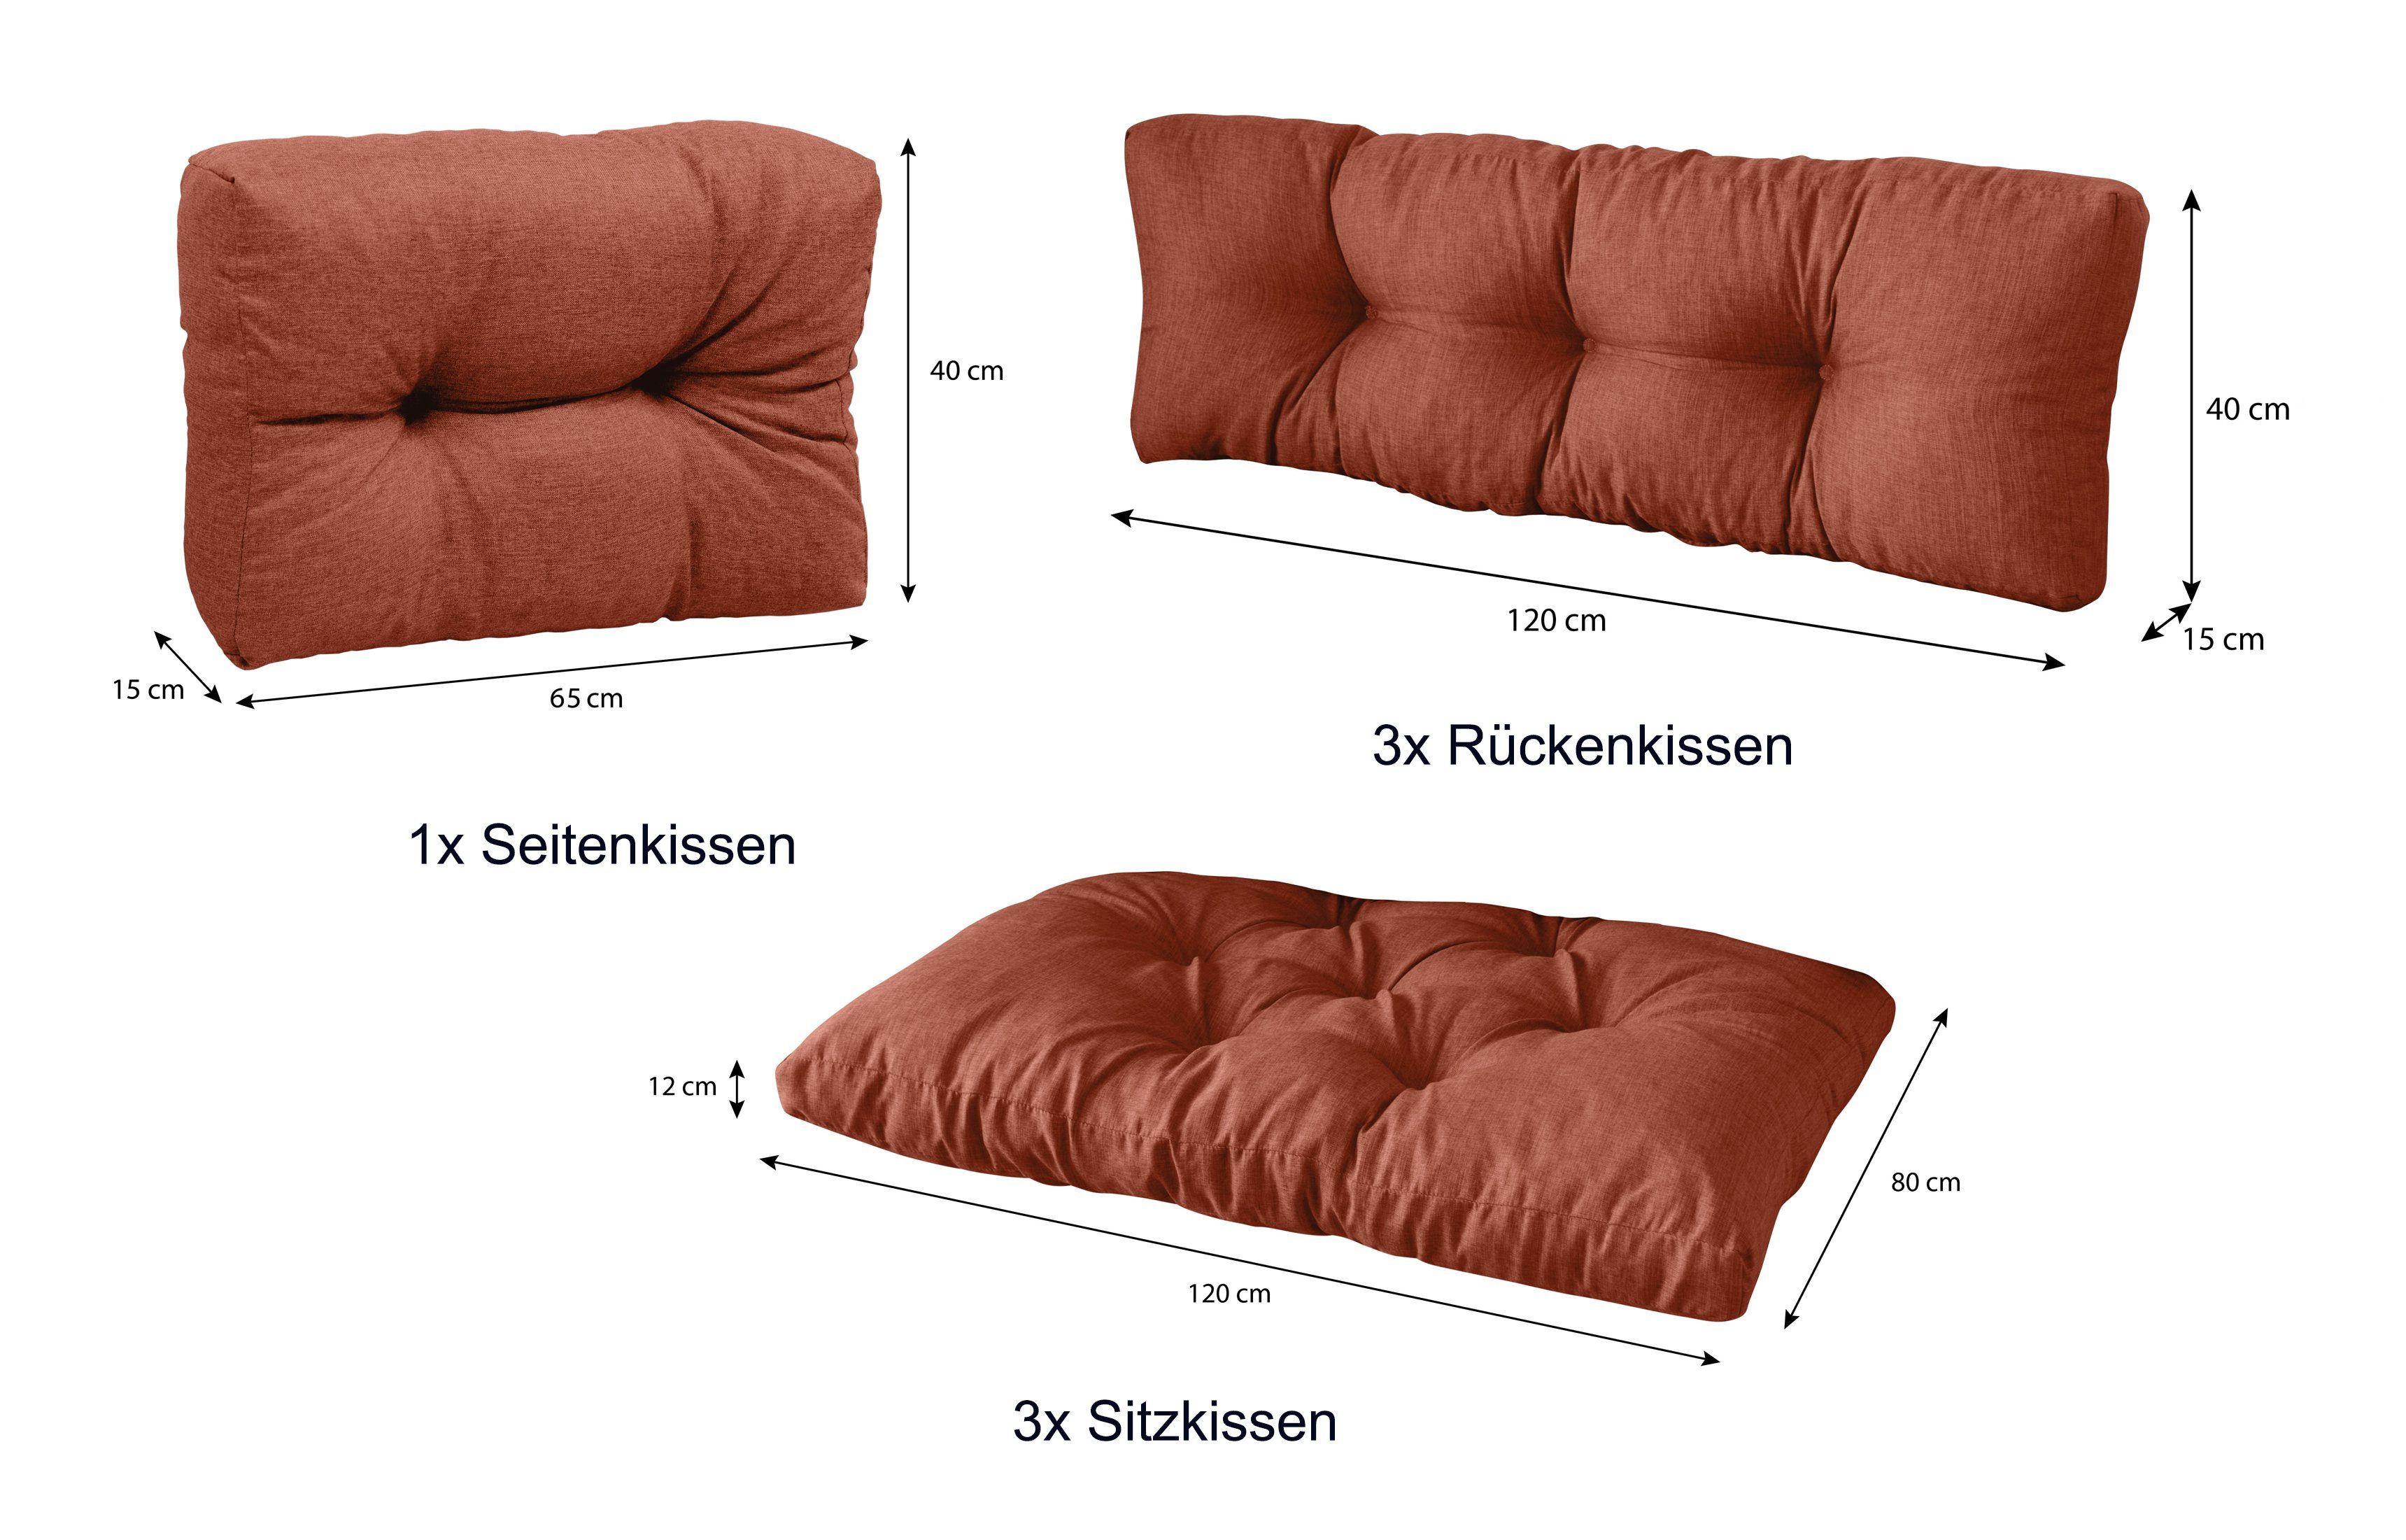 sunnypillow Palettenkissen 7er Set: palettenmöbel 3x palettencouch Sitzkissen polsterauflage Orange + x + 80 1x 120 Seitenkissen, Rückenkissen 3x